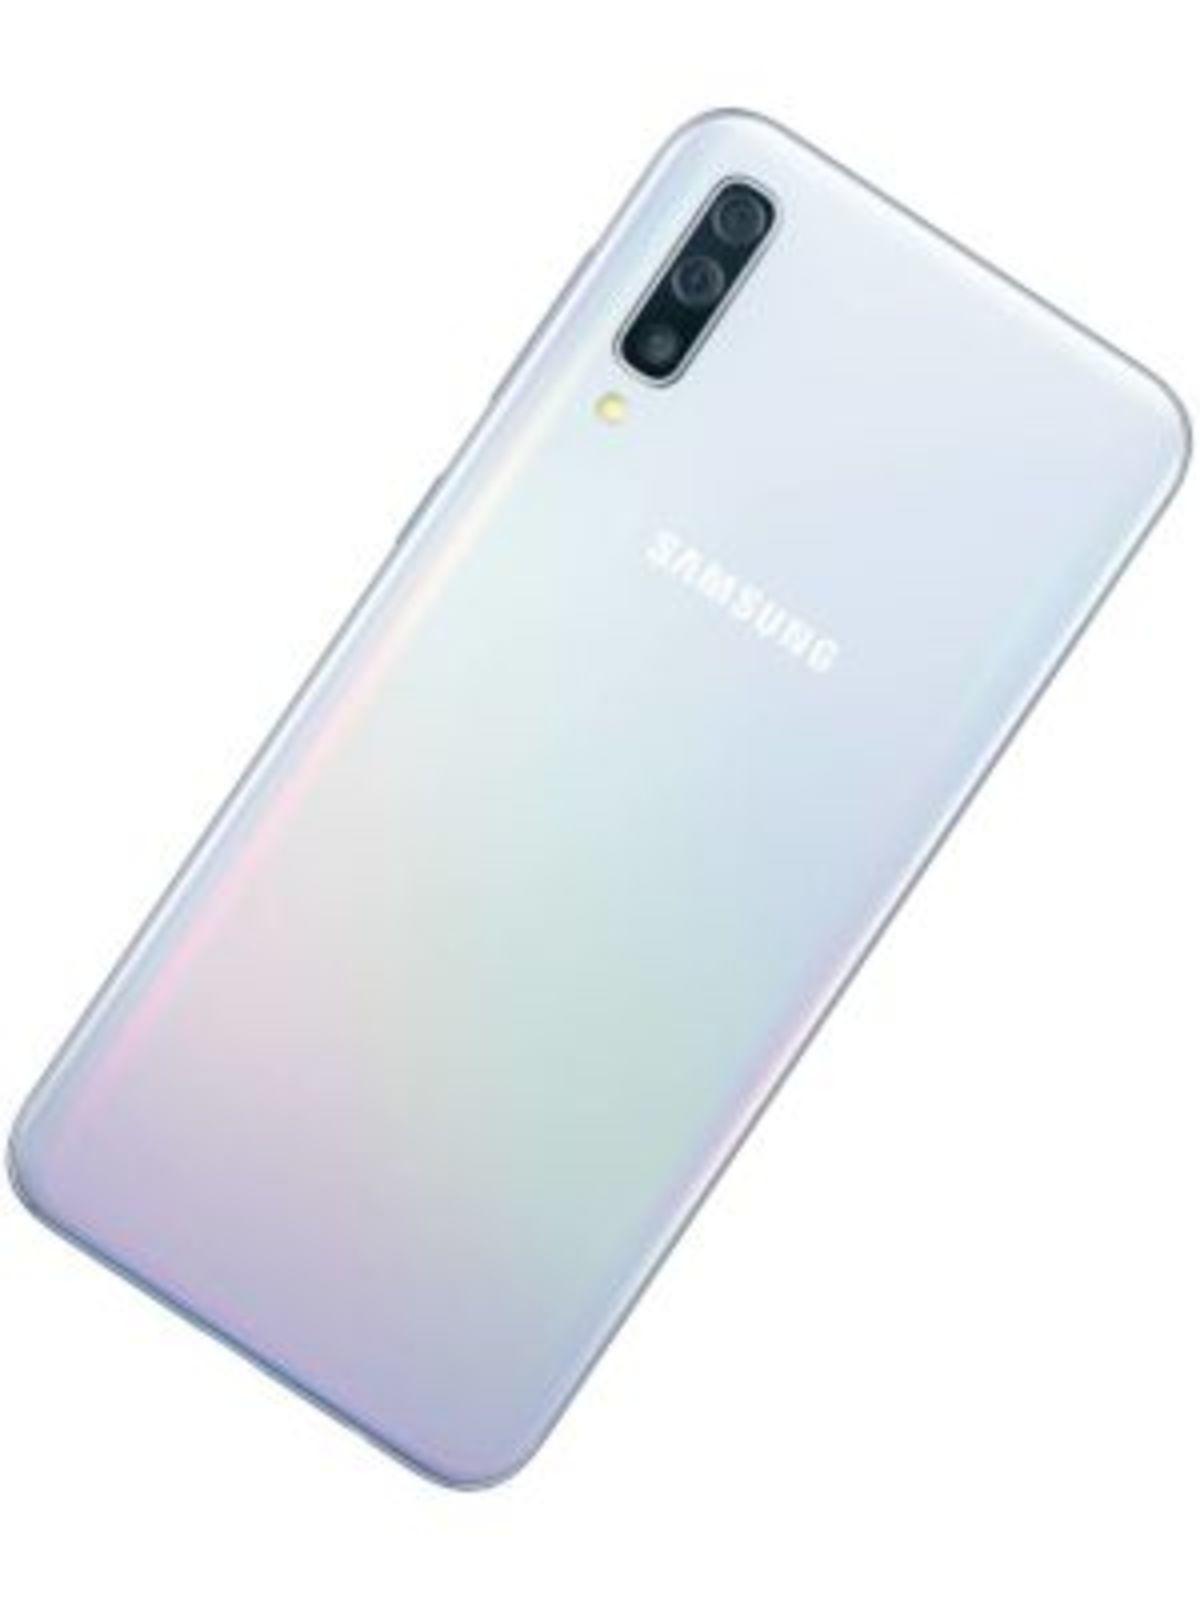 Самсунг галакси а35 купить. Samsung Galaxy a50. Samsung Galaxy a50 Samsung. Смартфон Samsung Galaxy a50 64gb. Самсунг галакси а 50.